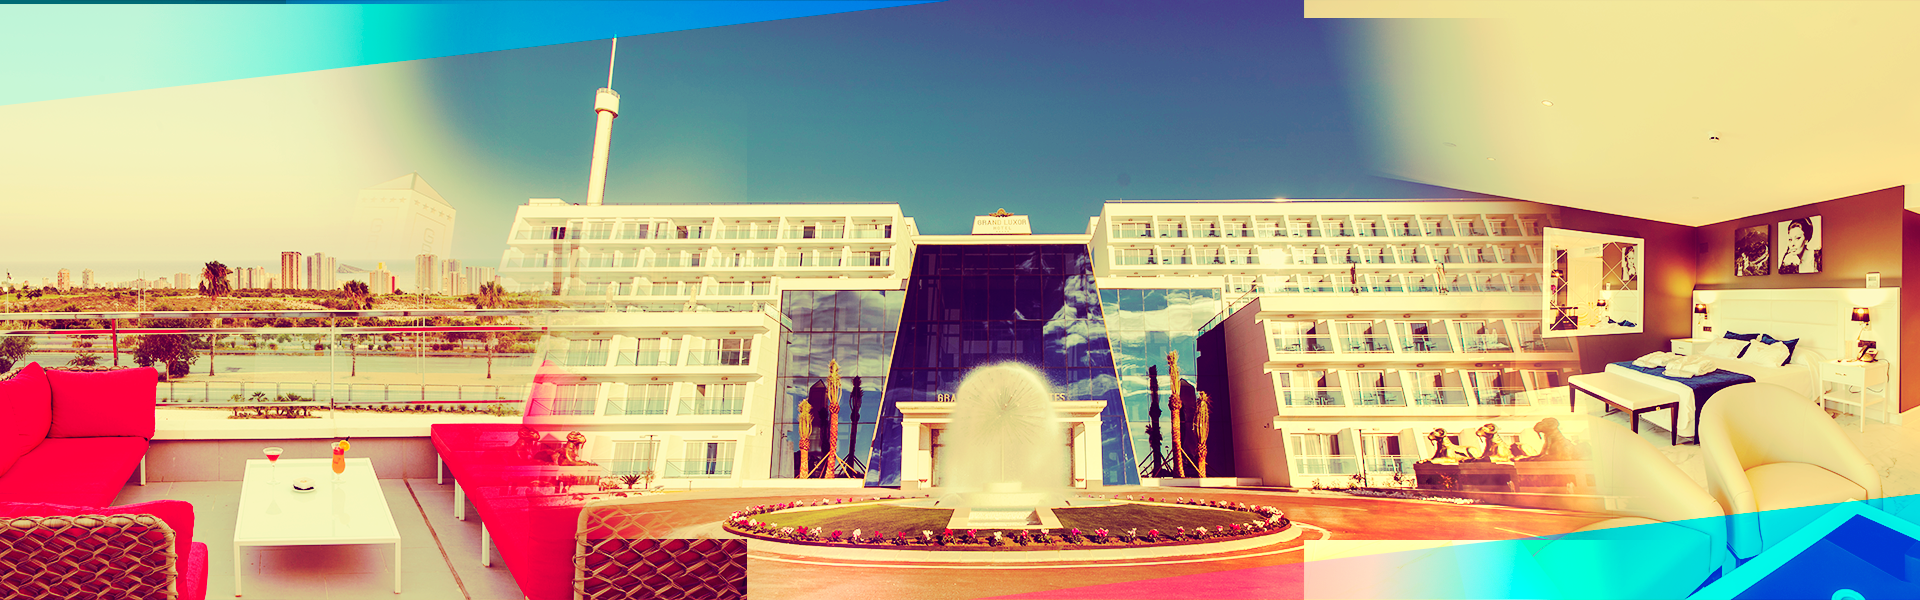 GRAN LUXOR HOTEL & VILLAS<br />
Sede oficial de Benidorm Summer Festival